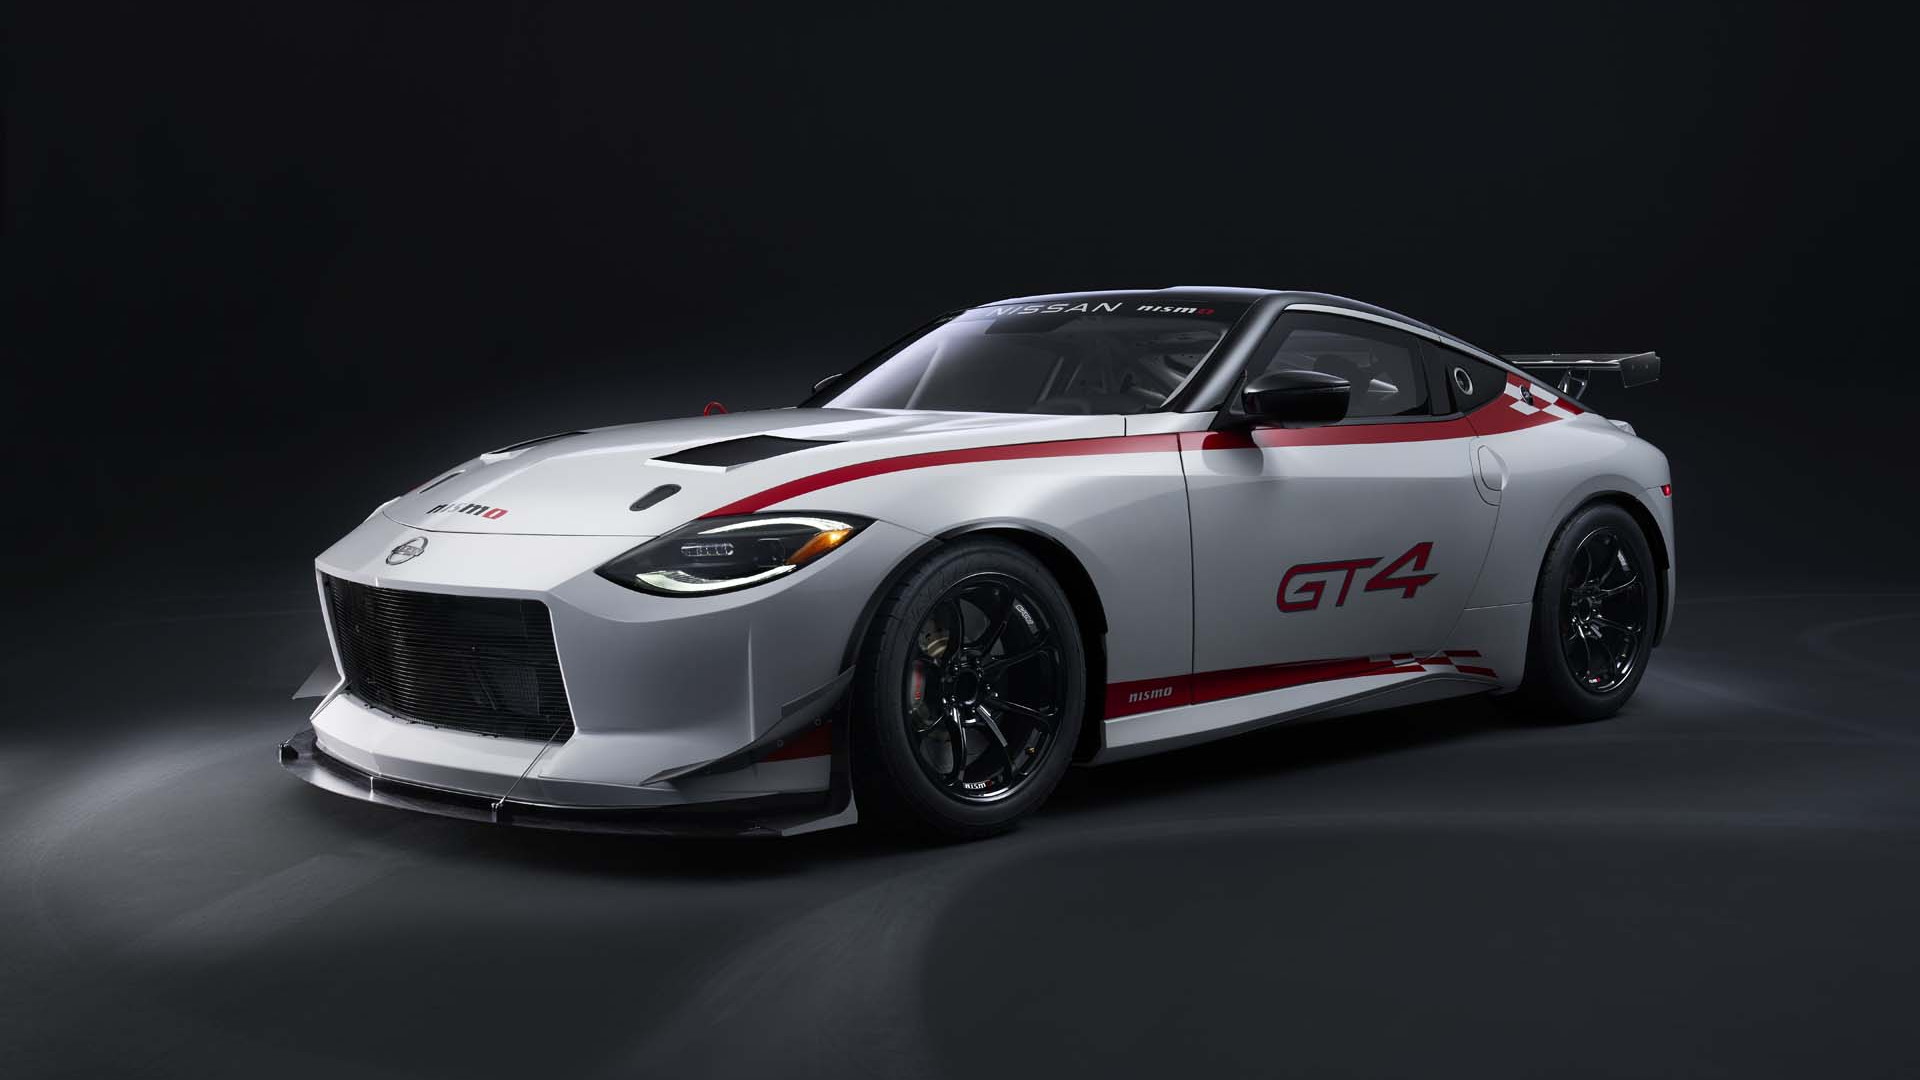 Nissan Z GT4 race car